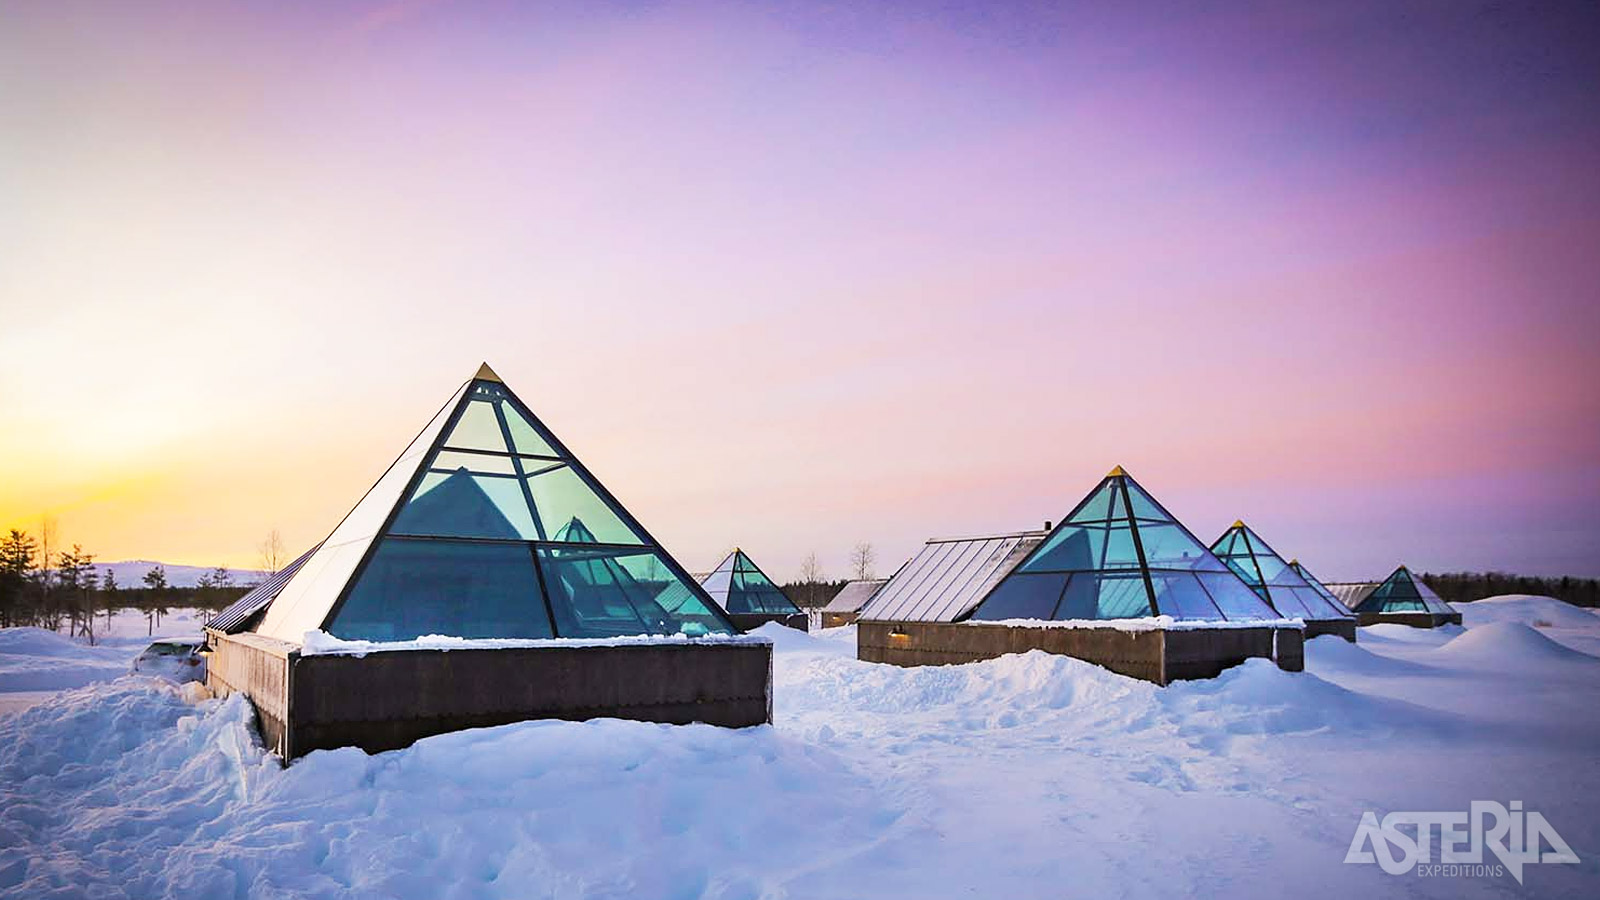 Je kan ook kiezen om één of meerdere nachten te logeren in een glazen piramide op wandelafstand van het hotel